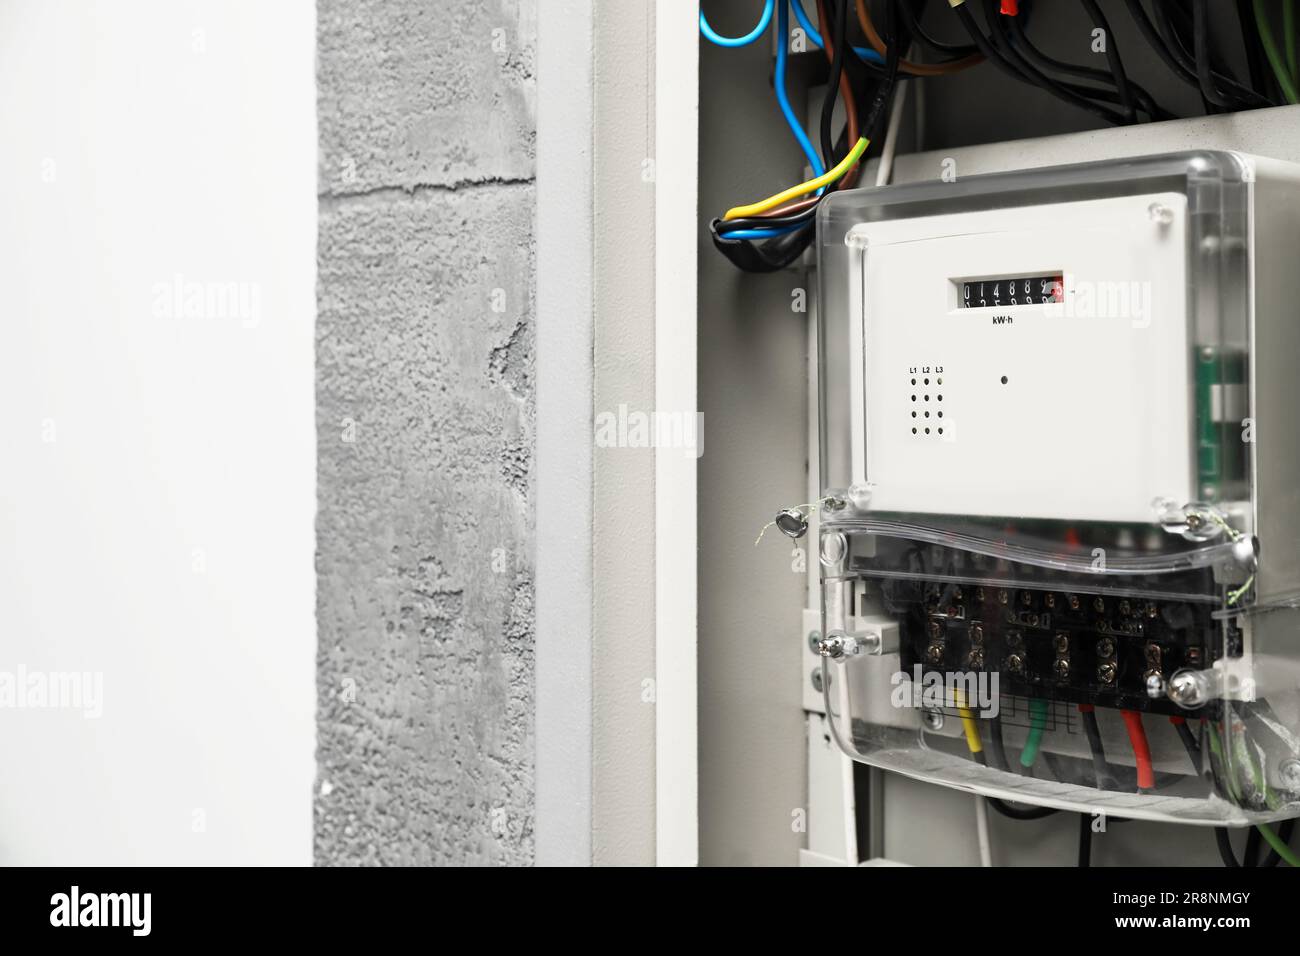 Stromzähler und Kabel im Sicherungskasten, Platz für Text Stockfotografie -  Alamy